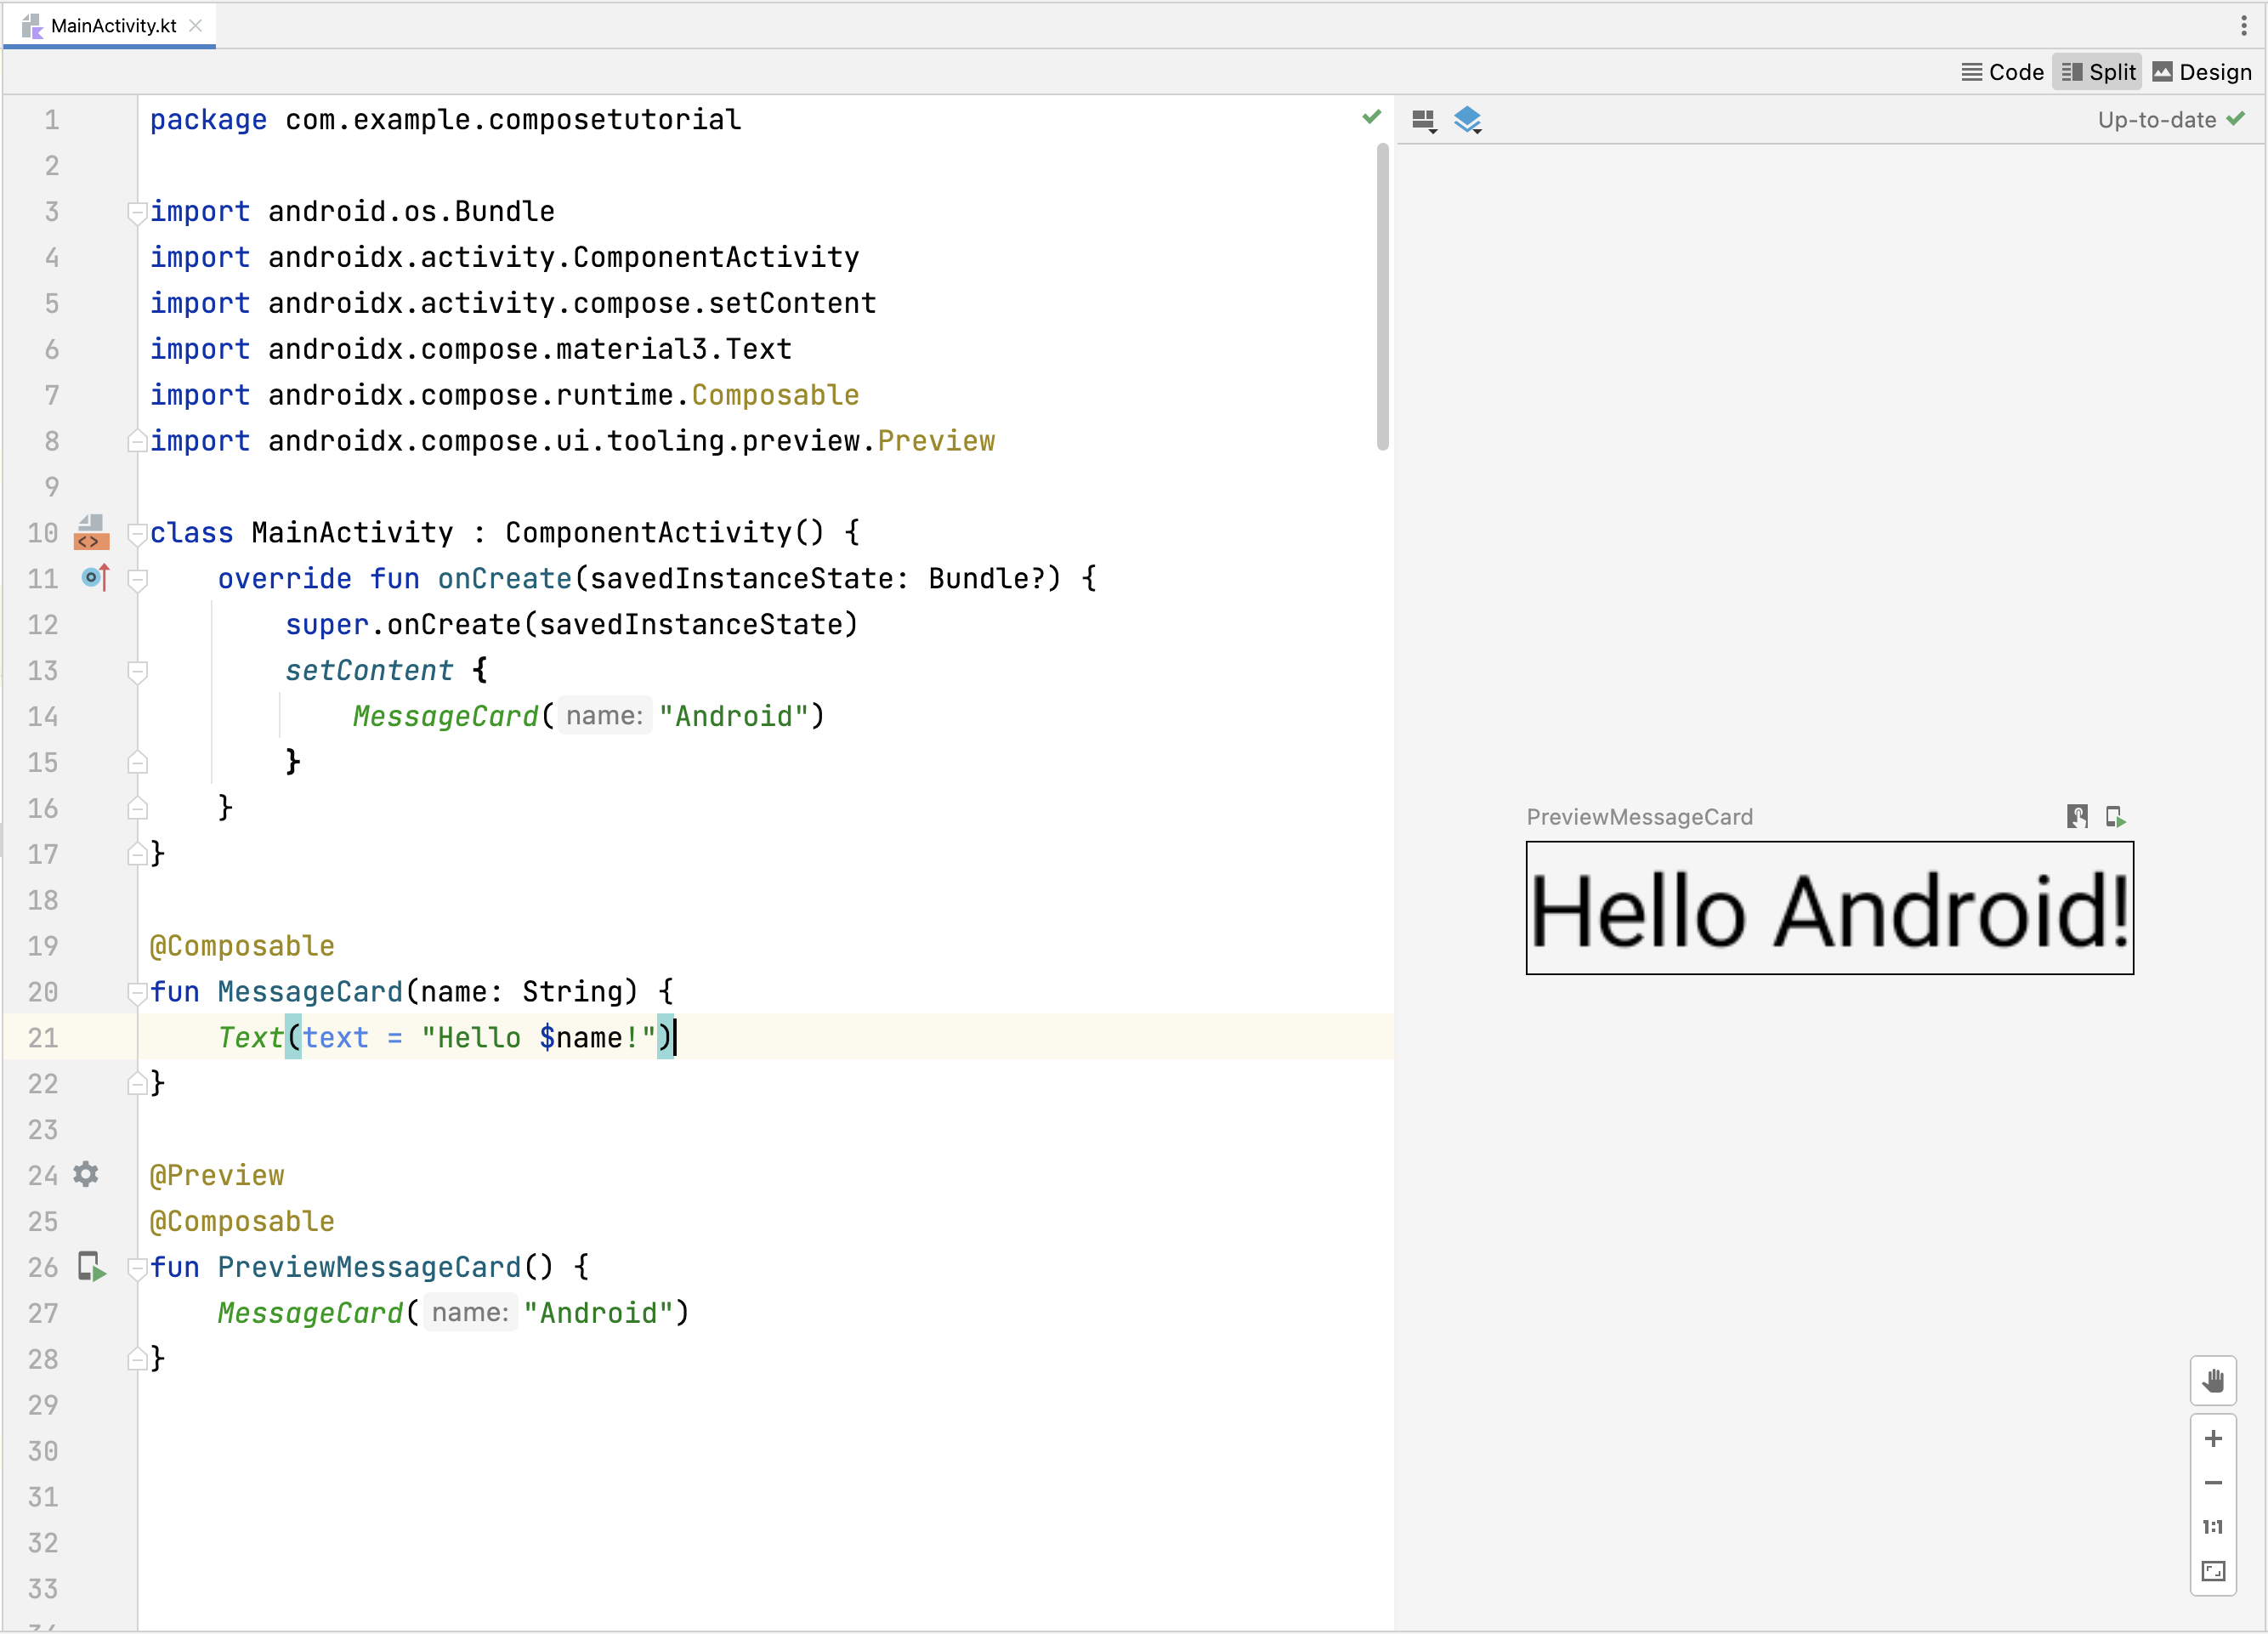 Podgląd funkcji kompozycyjnej w Android Studio